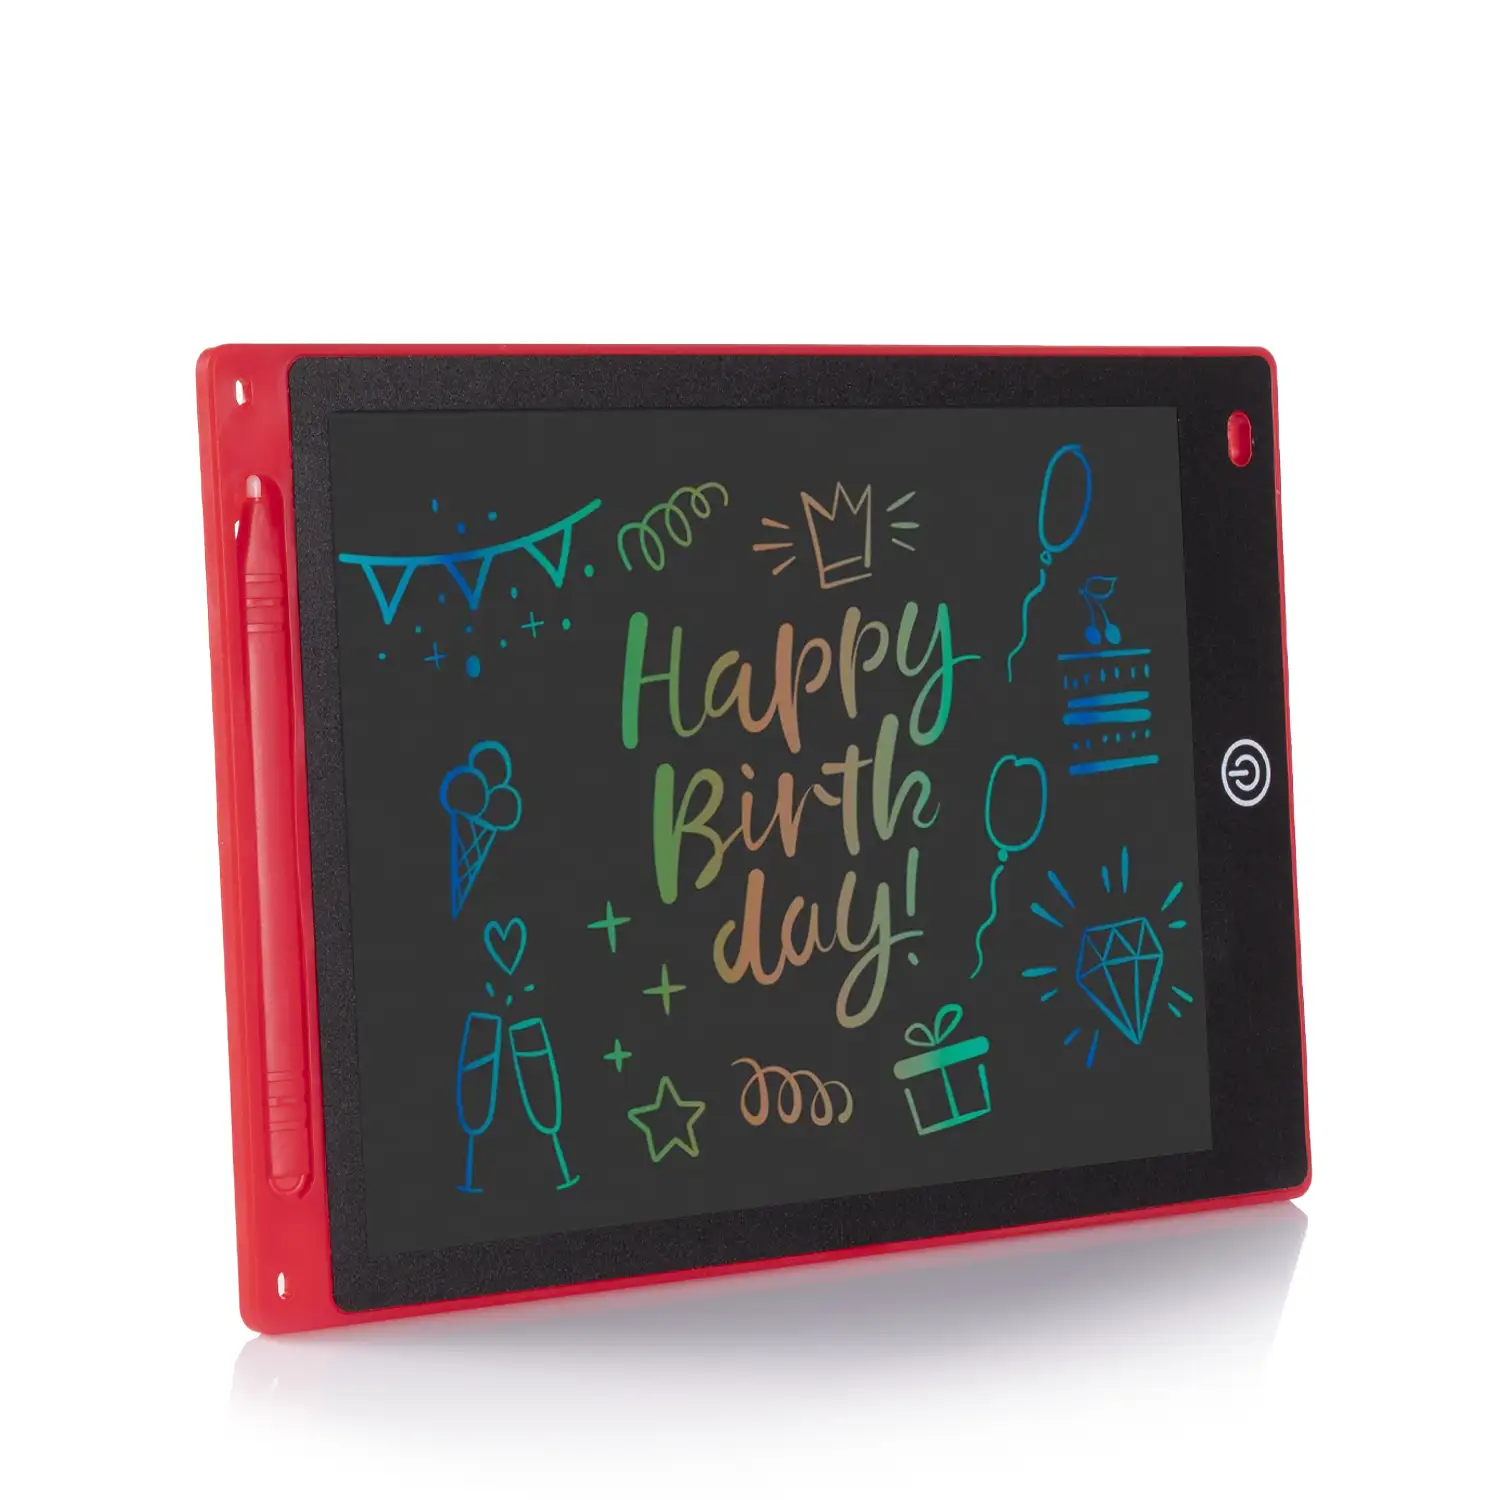 Tableta LCD portátil de dibujo y escritura de 10 pulgadas, con fondo multicolor.